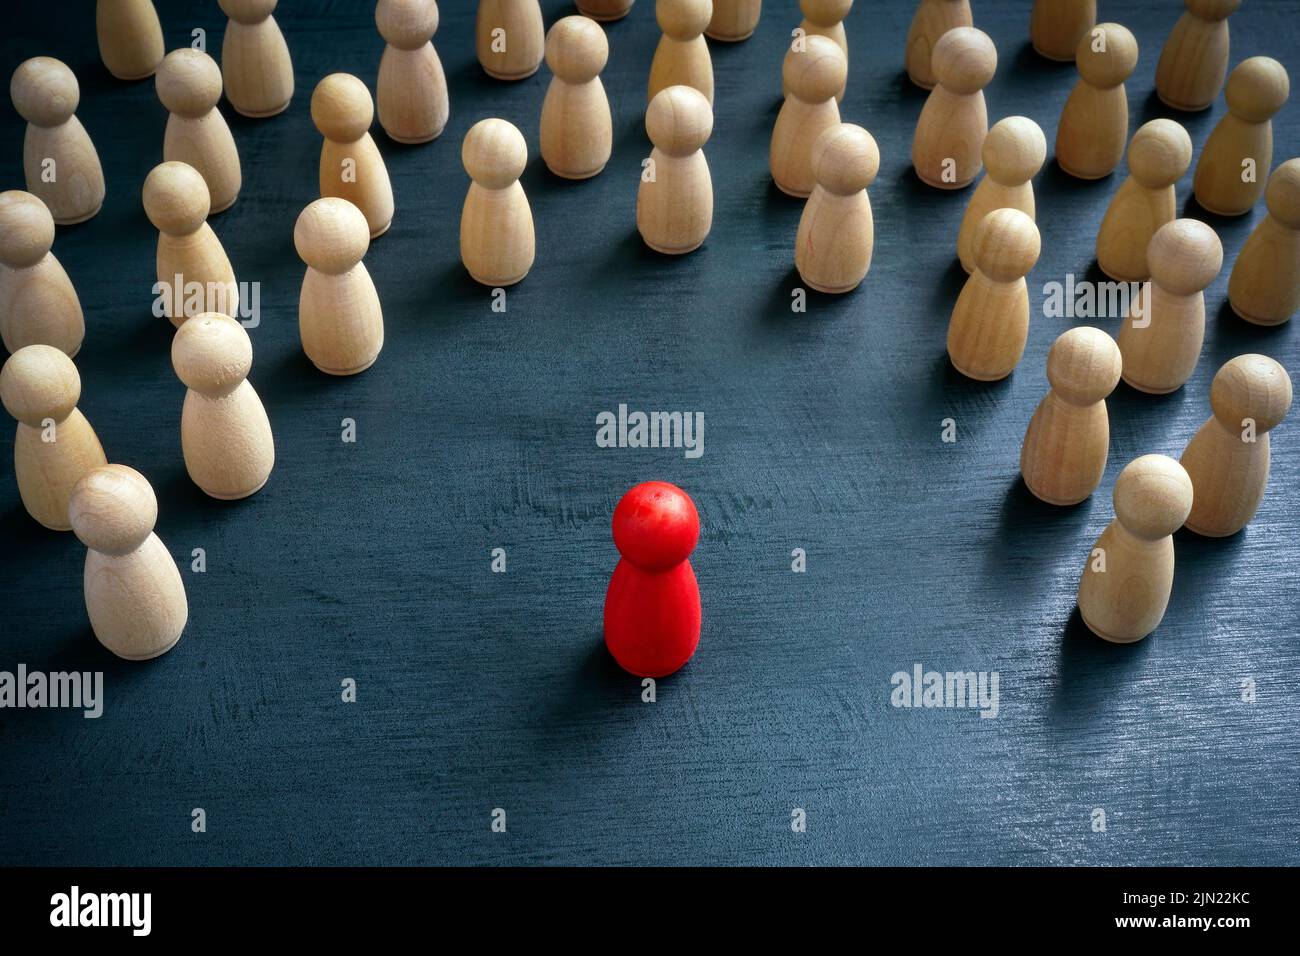 Concetto di discriminazione e inclusione. Le figurine in legno circondavano quella rossa. Foto Stock